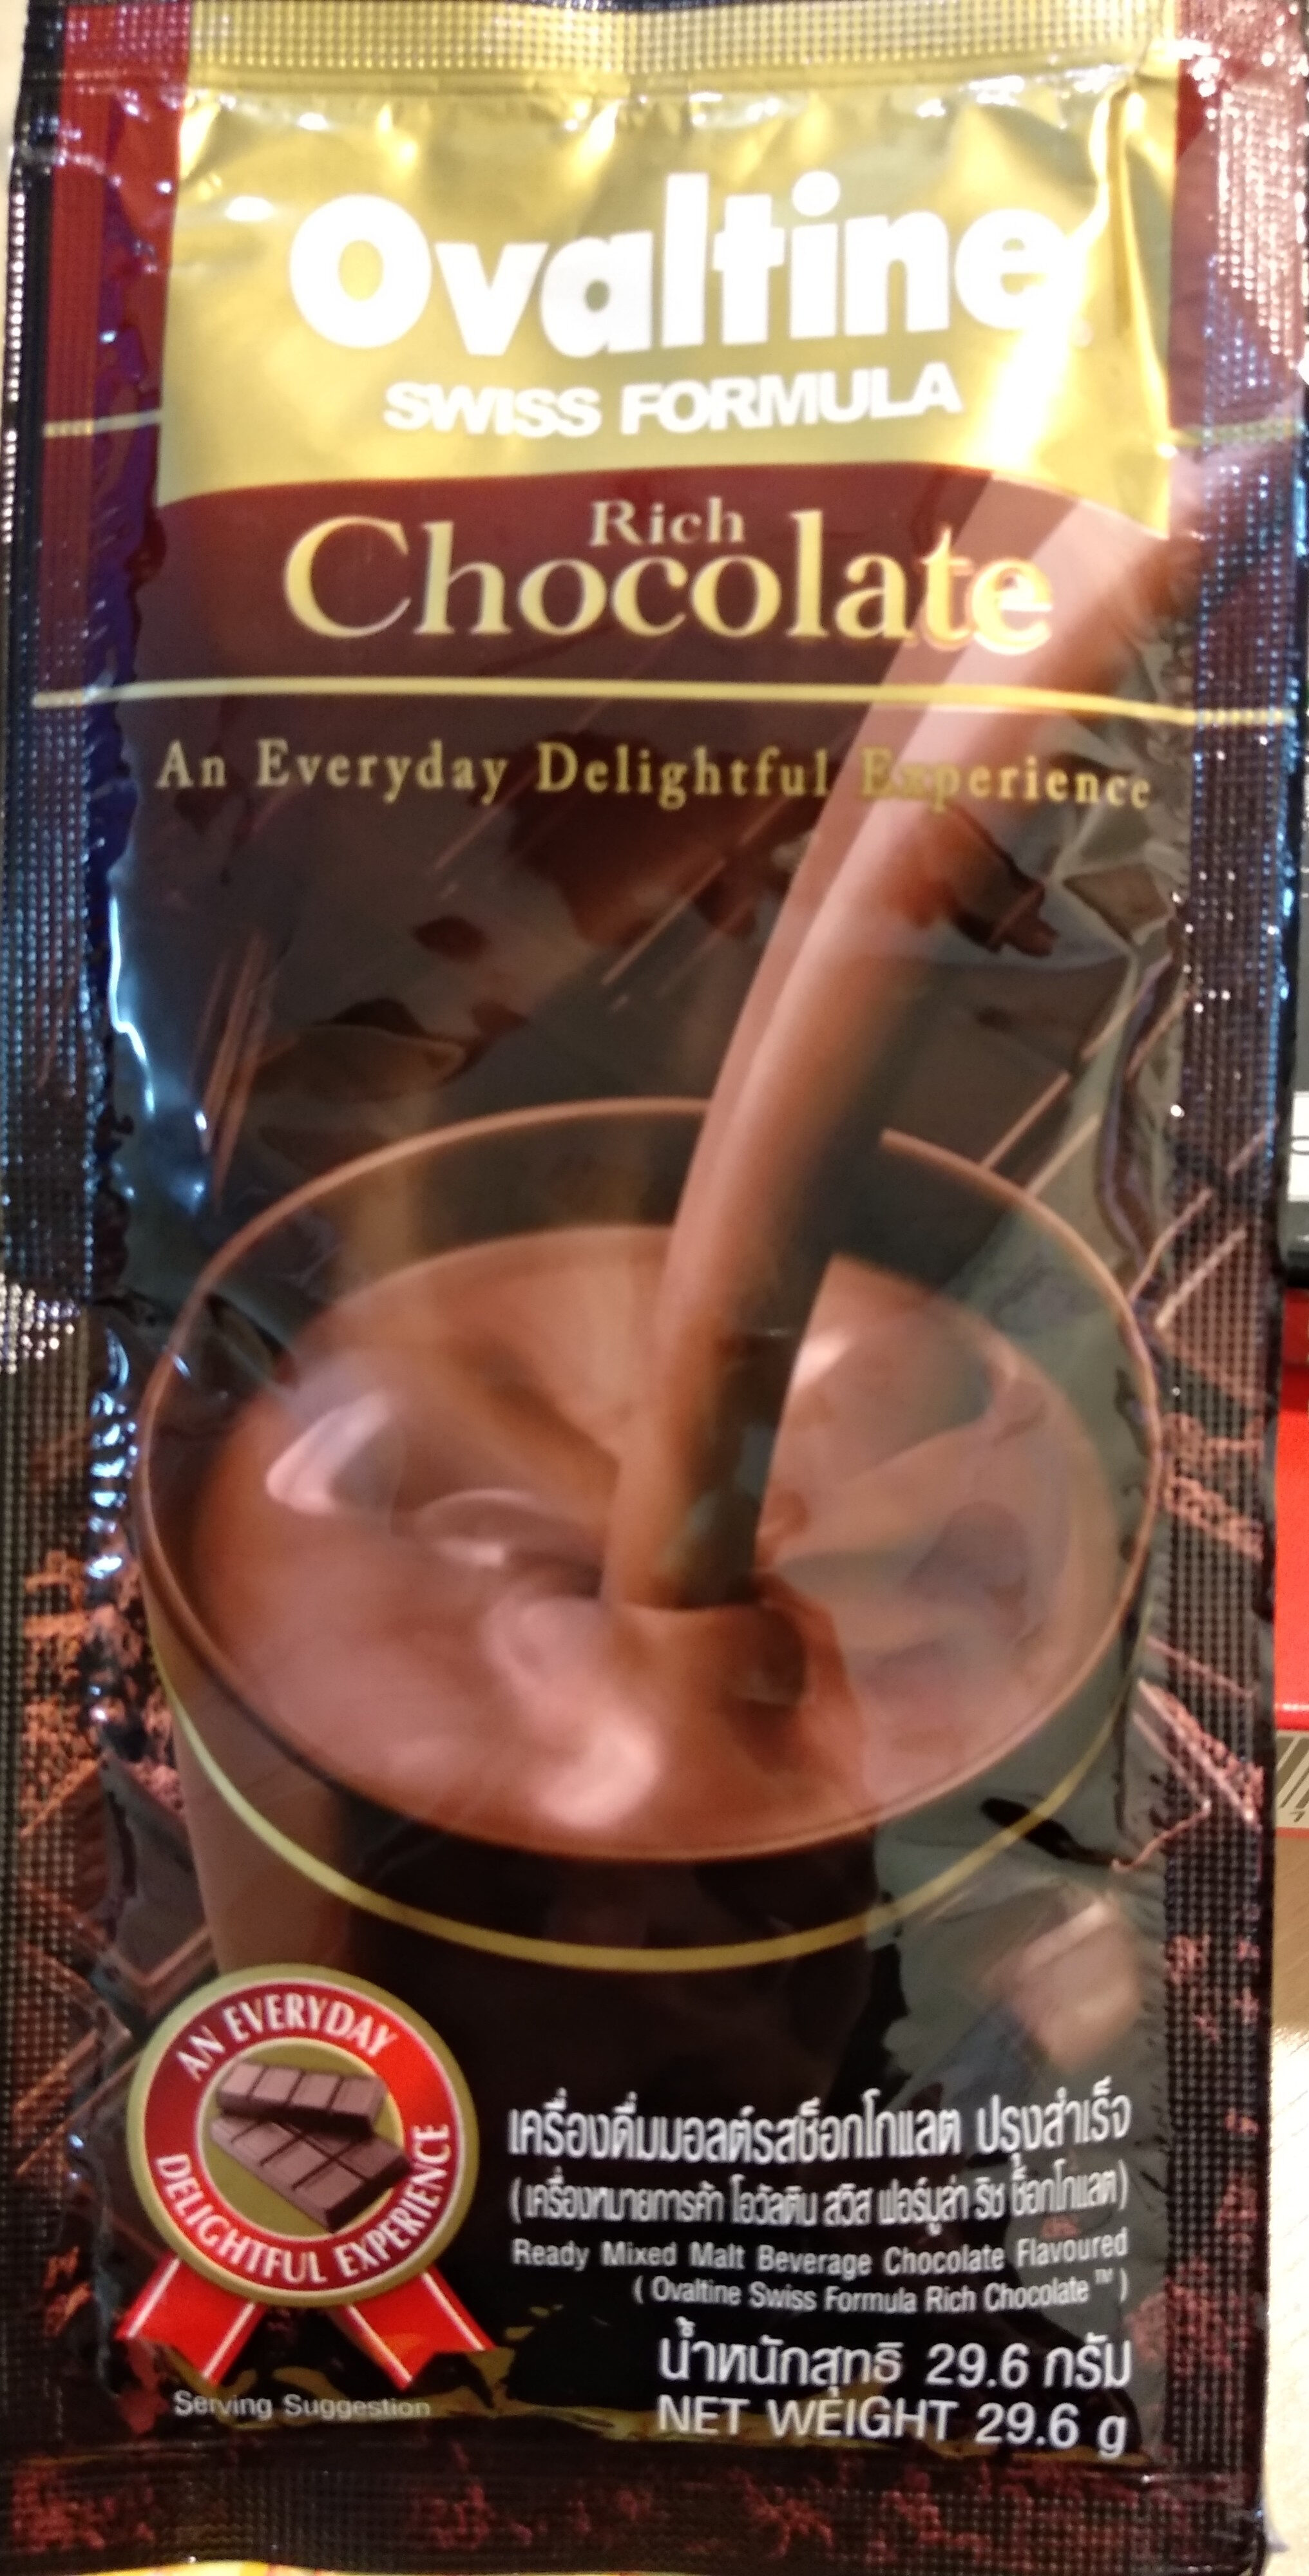 โอวัลติน สวิส ริช ช็อกโกแลต - Product - th